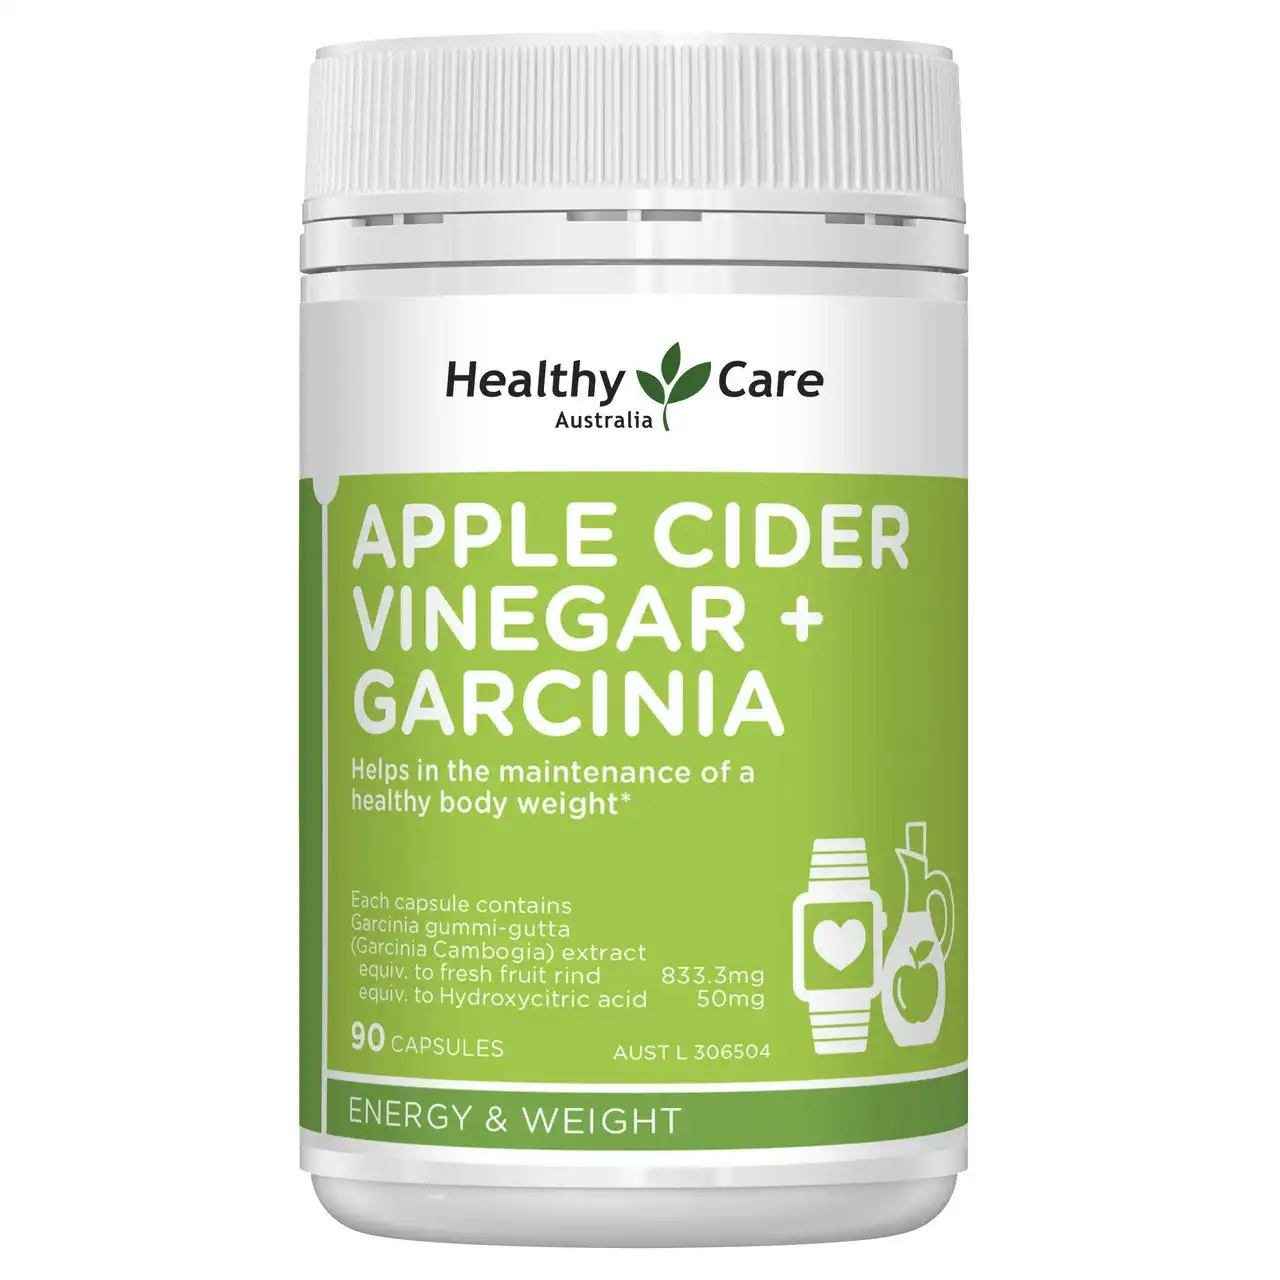 Healthy Care Australia Apple Cider Vinegar + Garcinia 90 Capsules